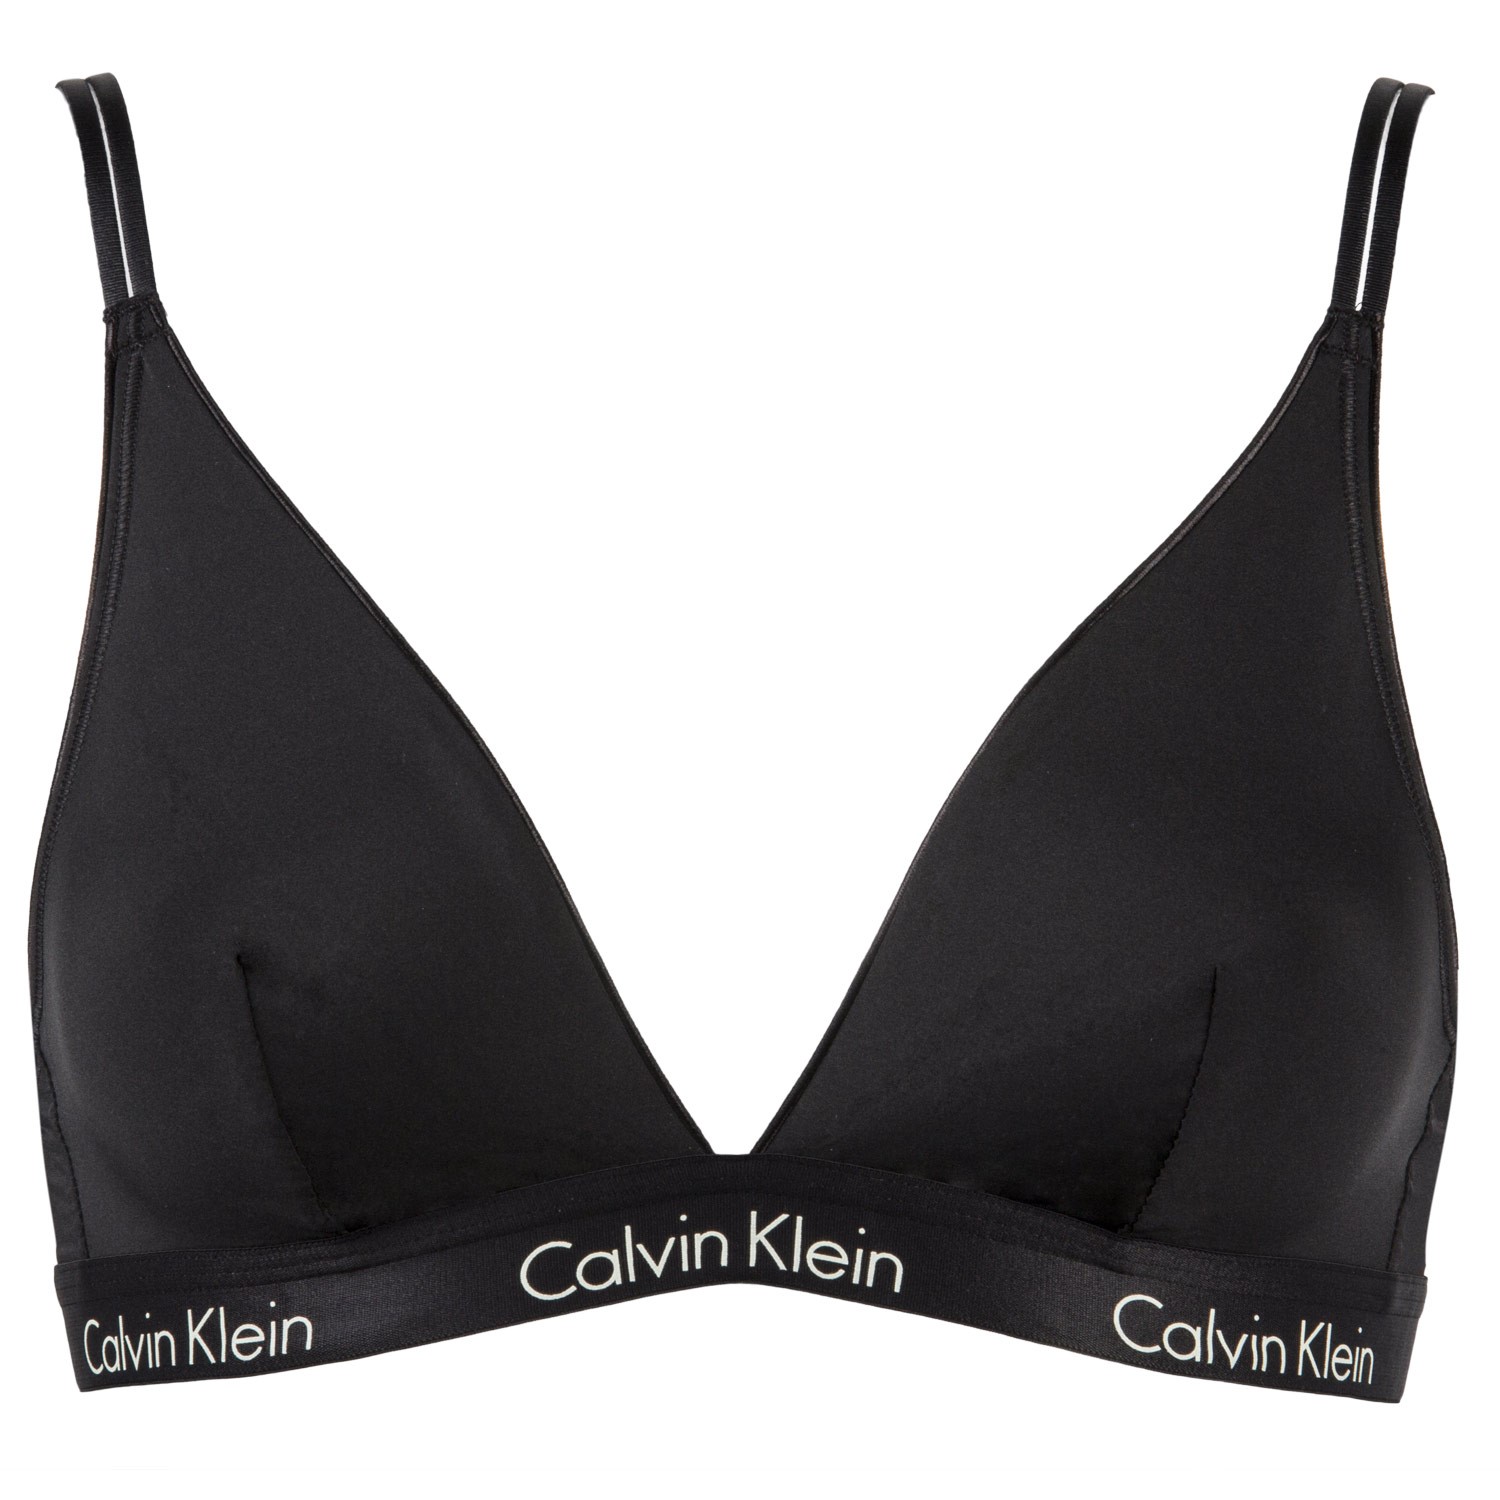 Calvin Klein Ck One Micro Triangle Bra Soft Bra Bras Underwear